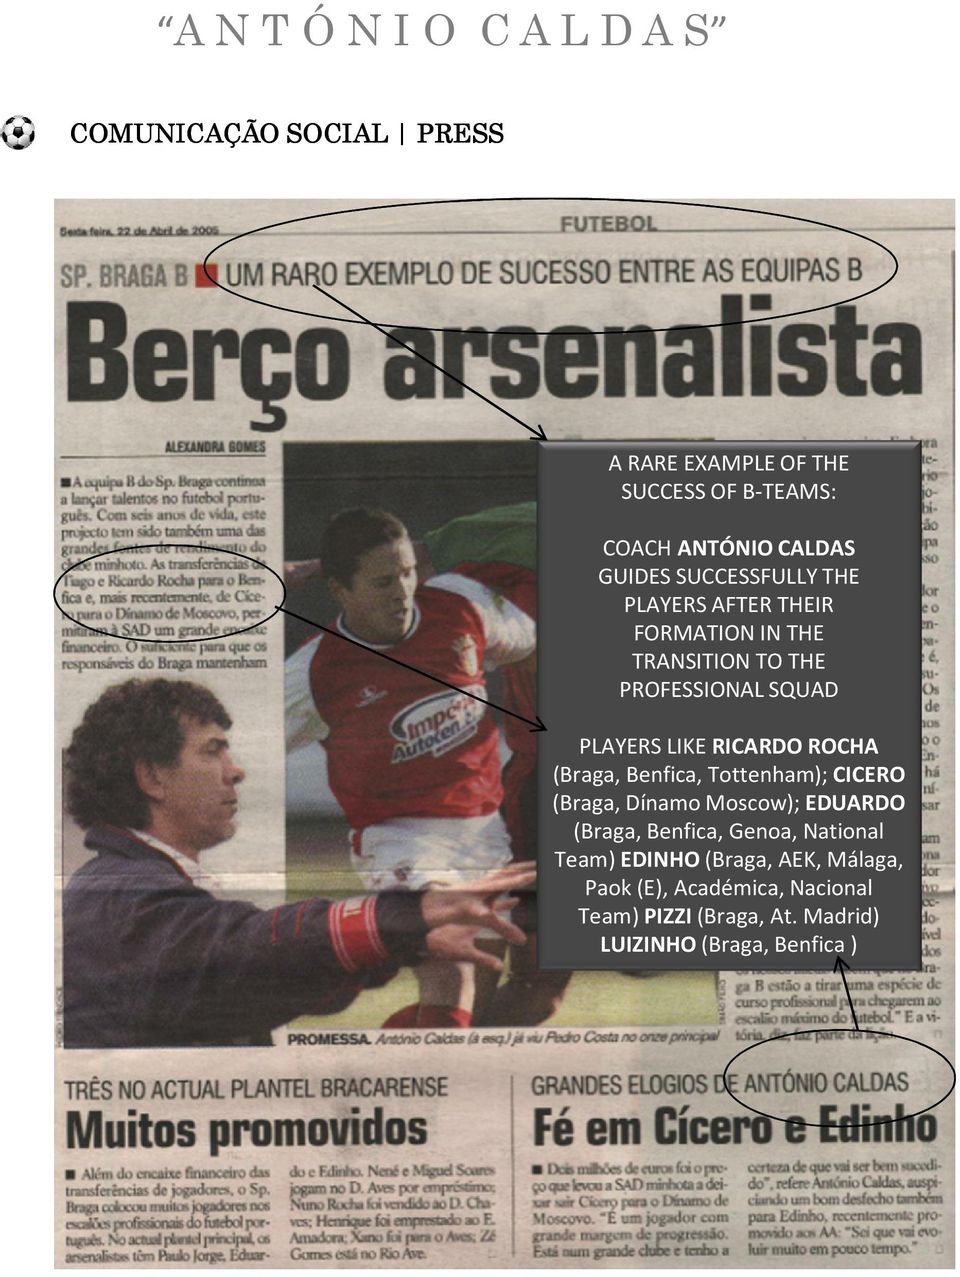 (Braga, Benfica, Tottenham); CICERO (Braga, Dínamo Moscow); EDUARDO (Braga, Benfica, Genoa, National Team)